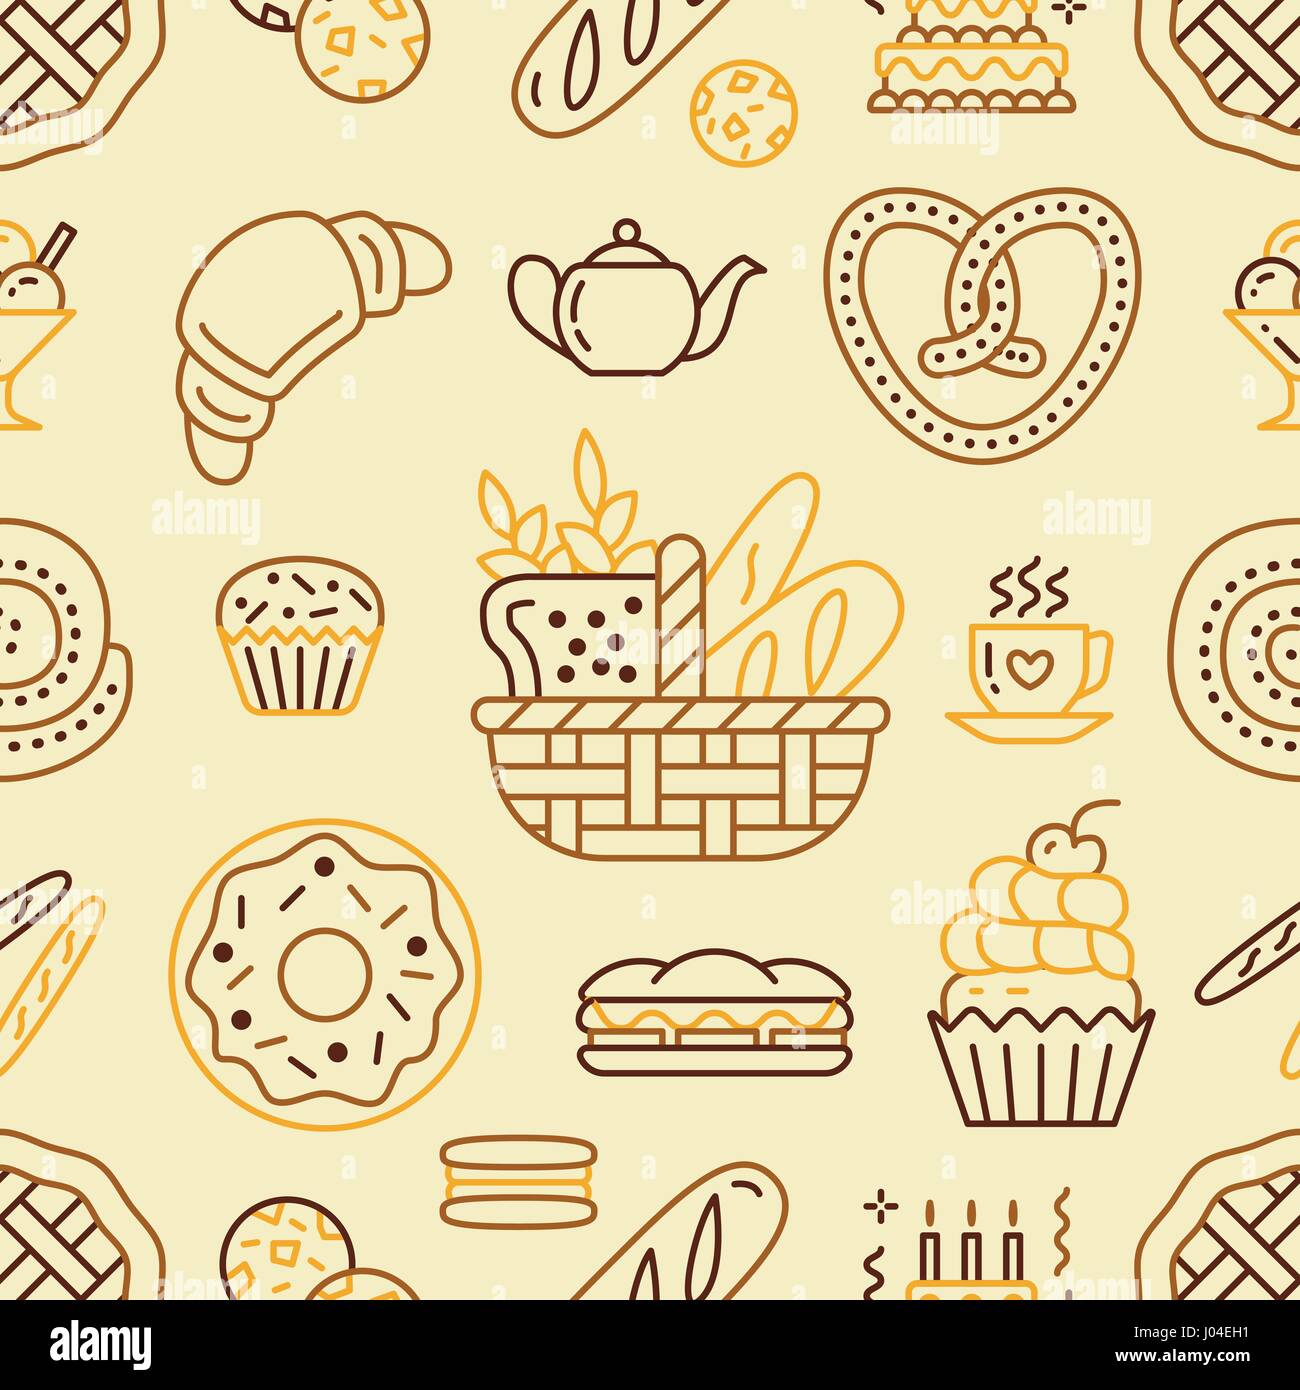 Panificio seamless pattern, vettore alimentare sullo sfondo di colore beige. Prodotti dolciari sottile linea icone - torta, croissant, muffin, pasticceria, tortina, torta. Carino illustrazione ripetuta per il negozio di dolci Illustrazione Vettoriale